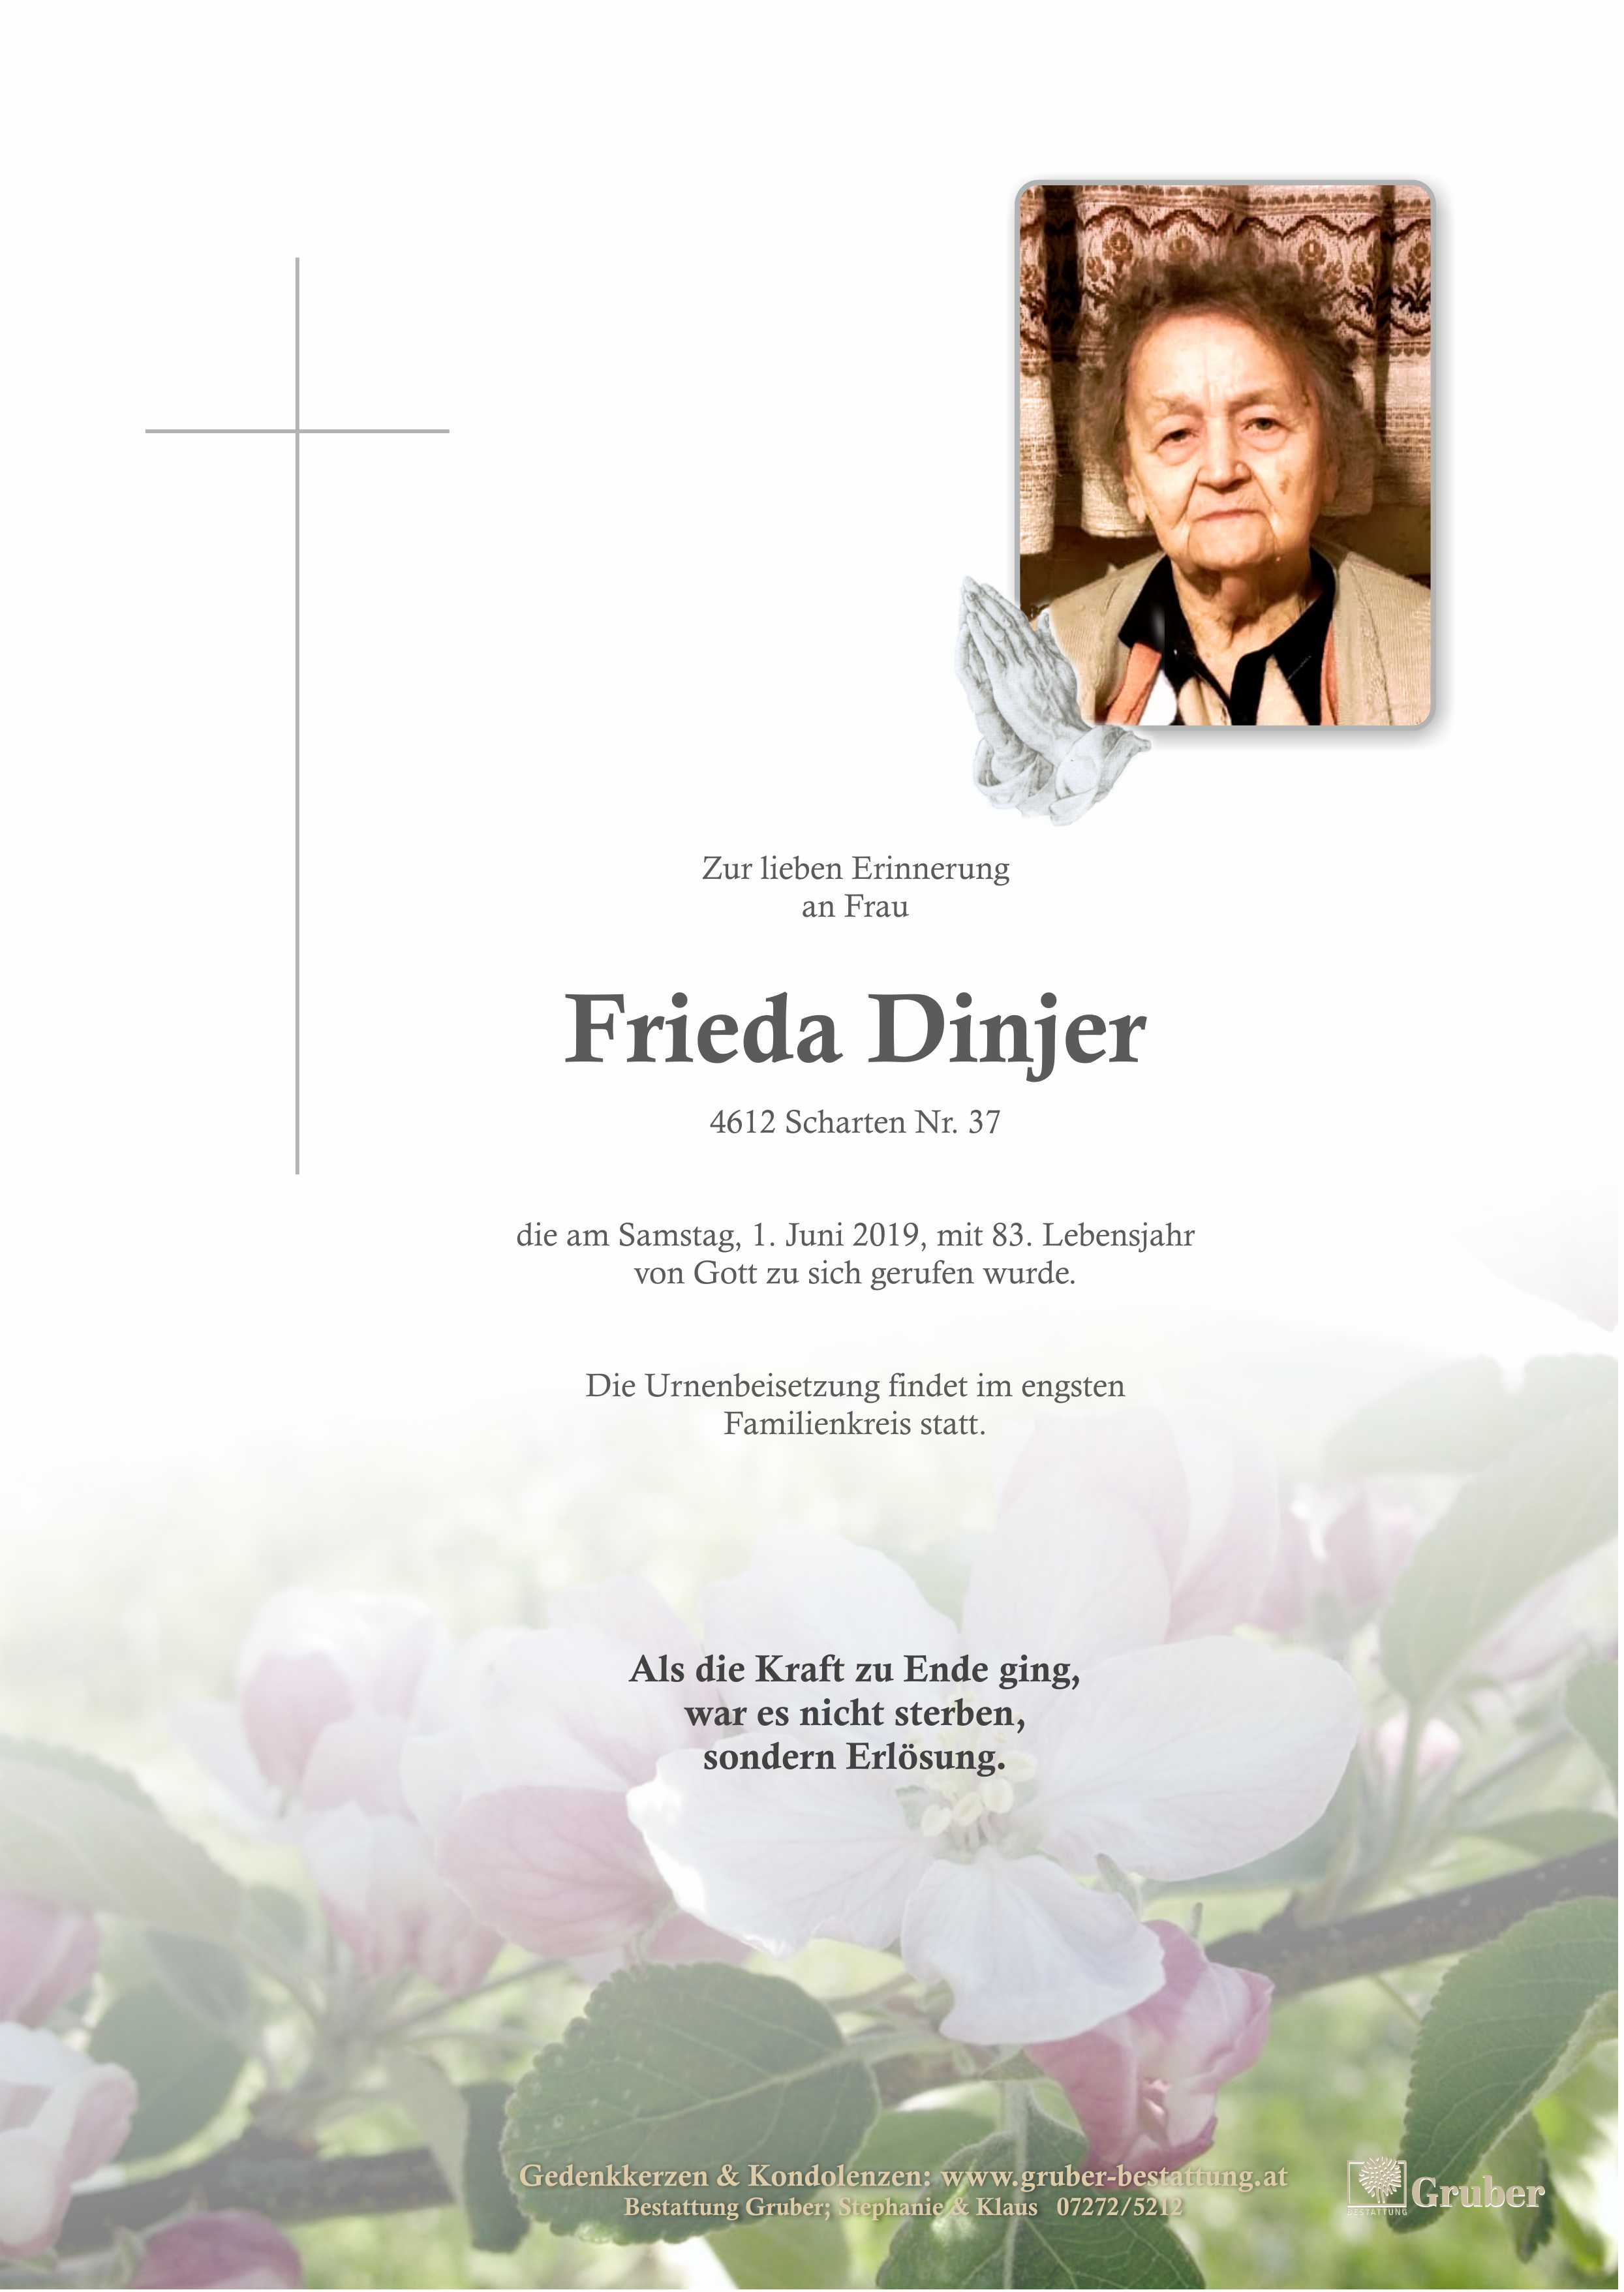 Frieda Dinjer (Scharten Kath.)